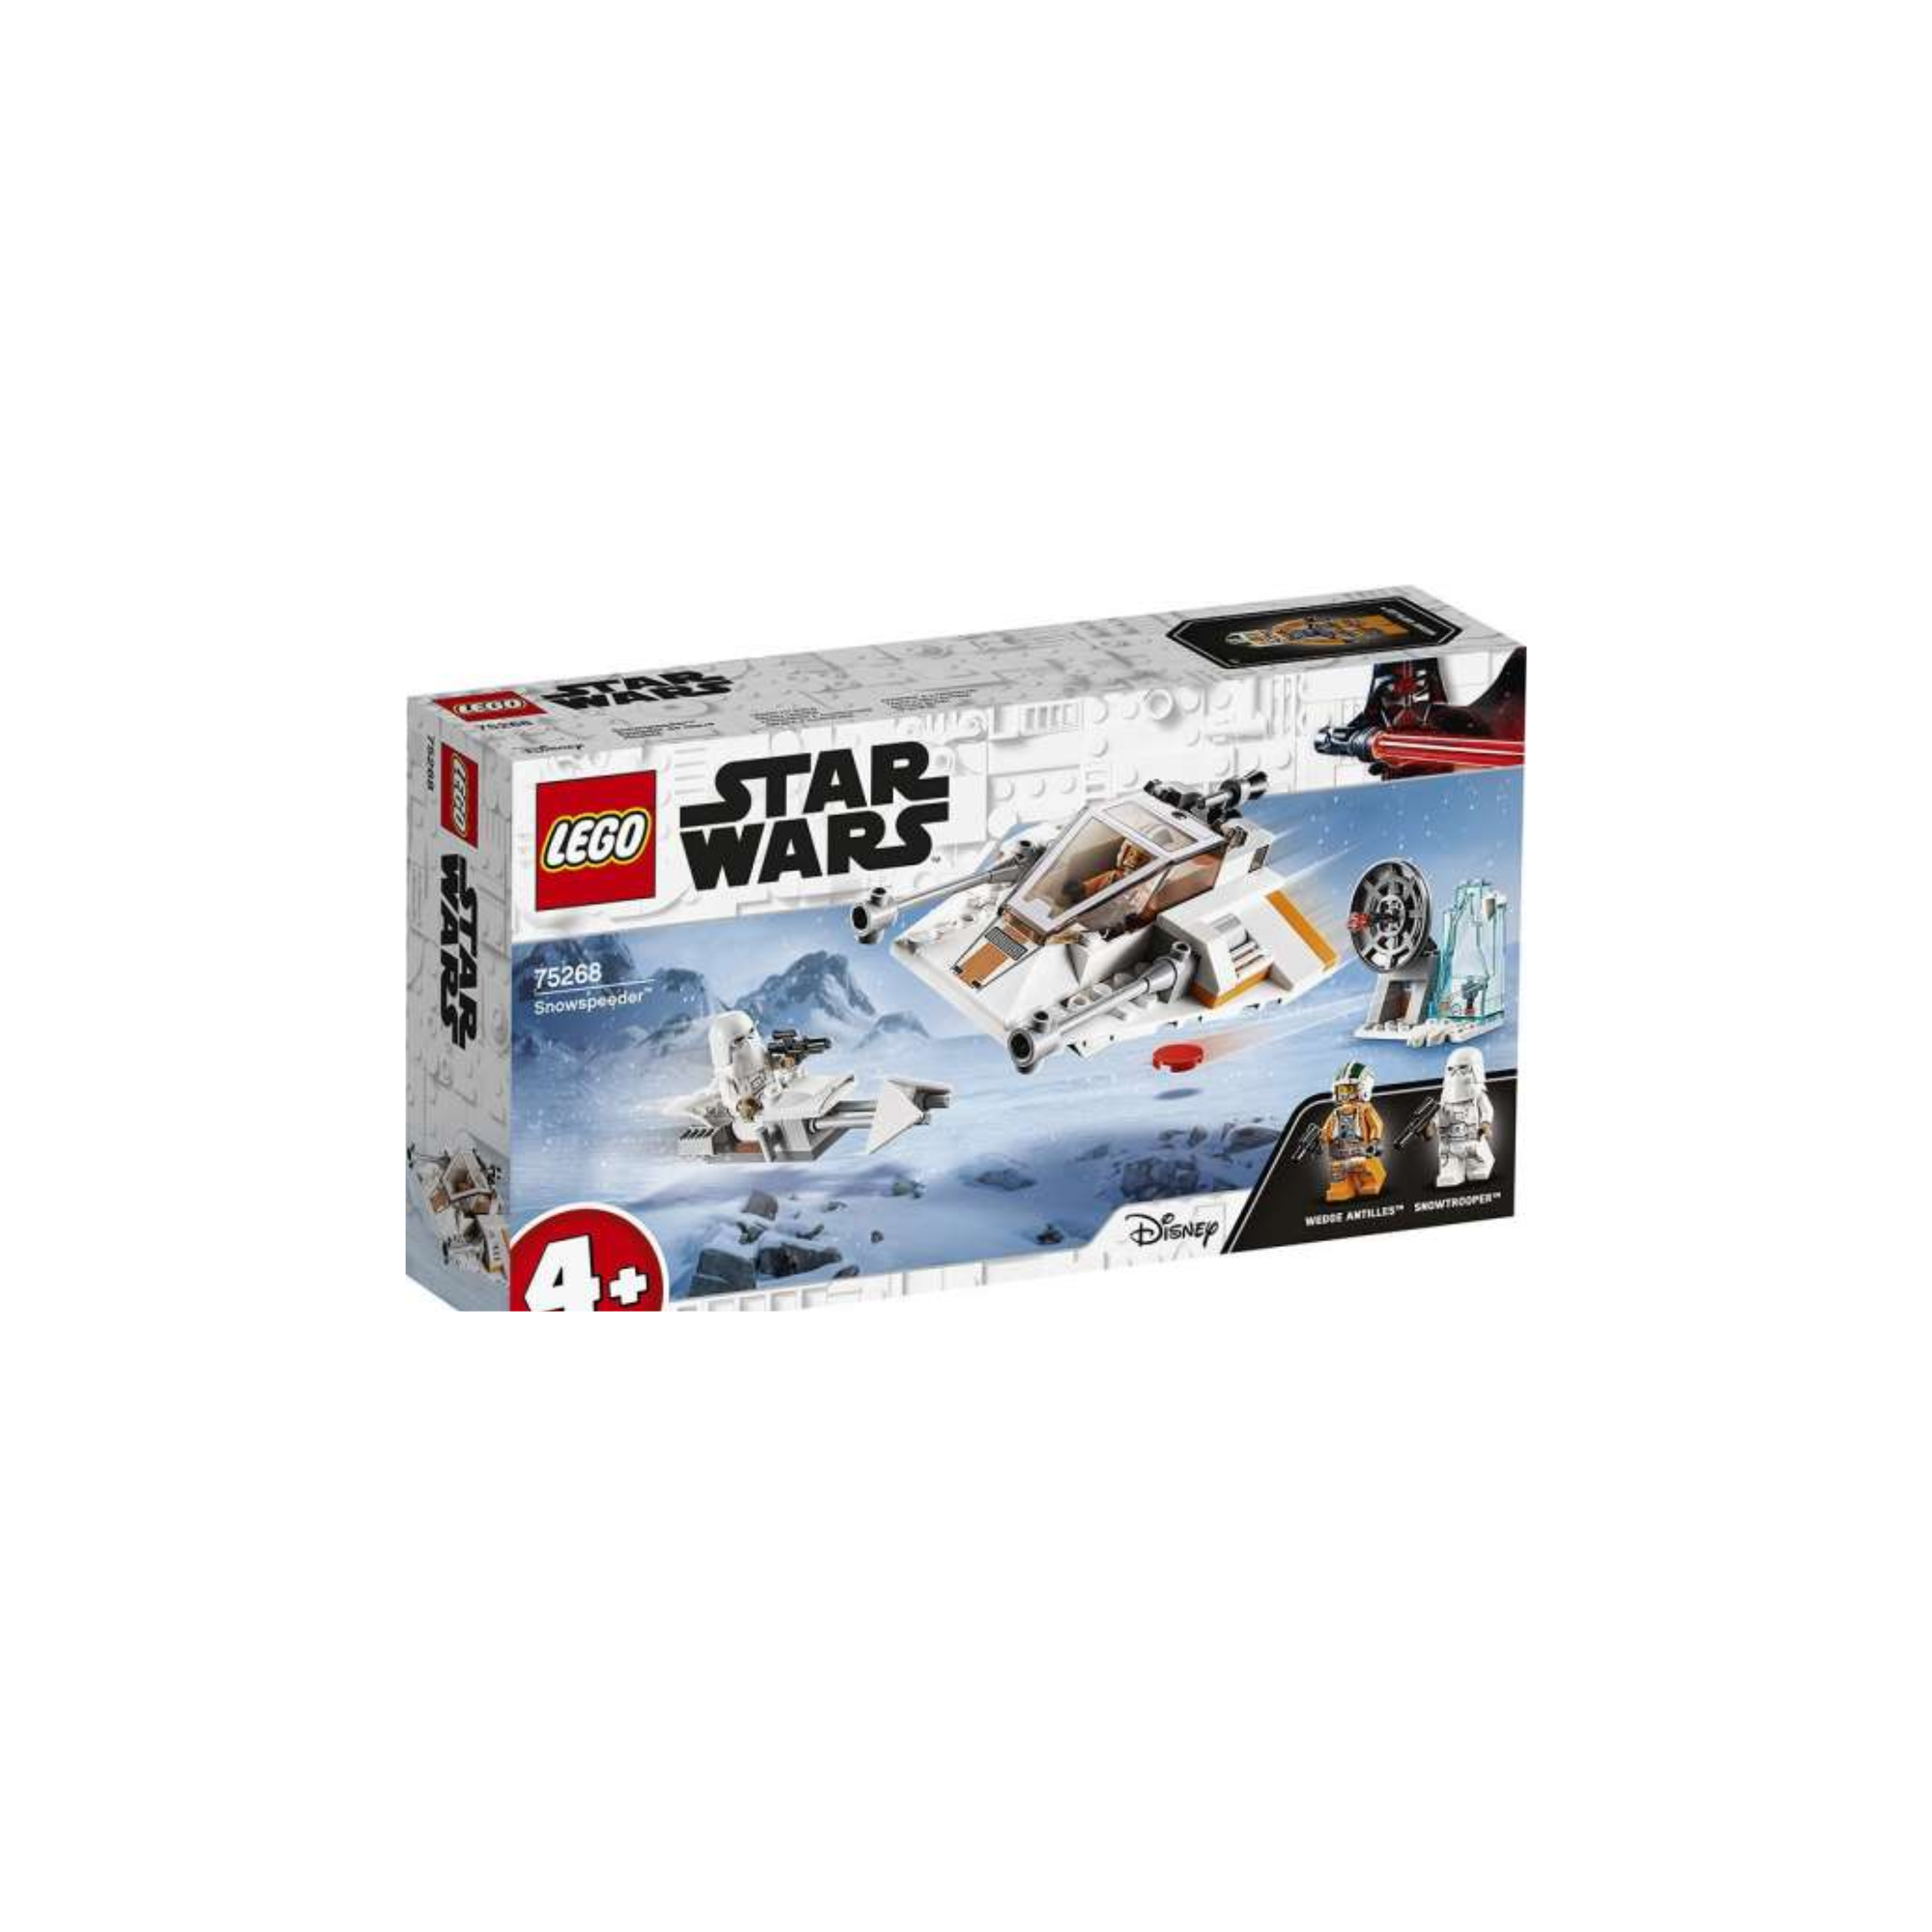 Star Wars Lego Snowspeeder